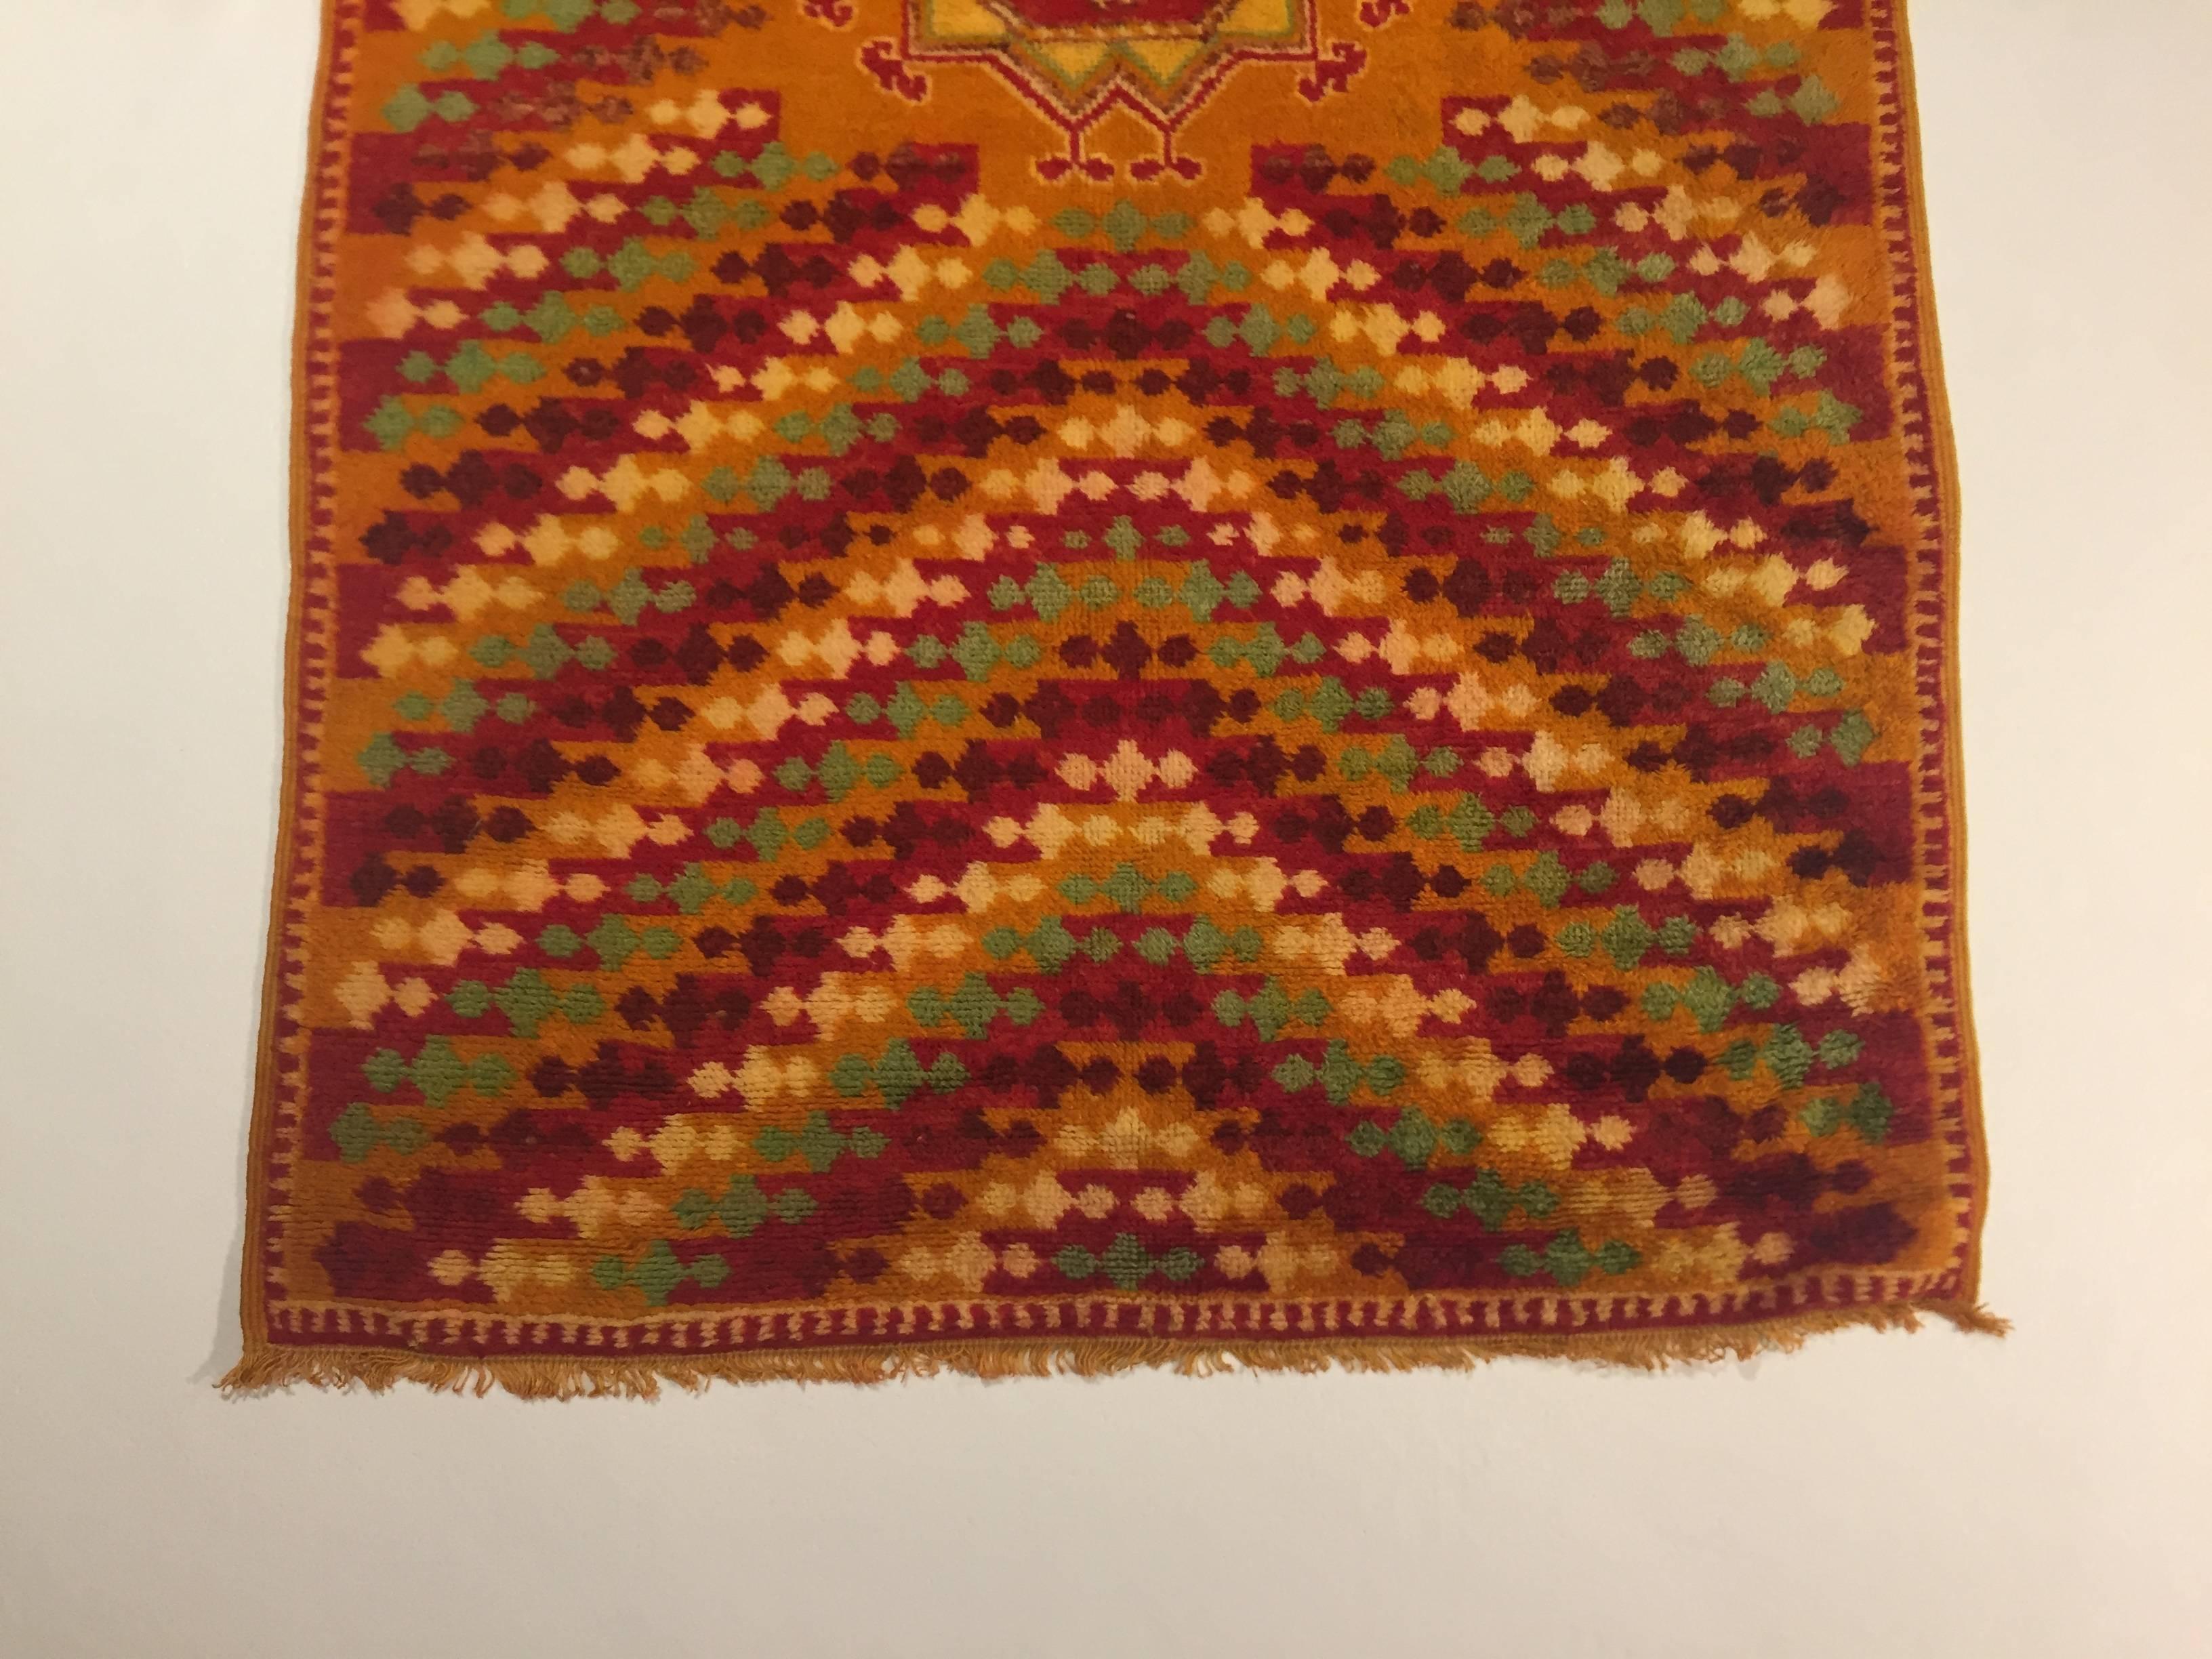 Berberteppich der Qualität Oouauzouite. Diese Art von Teppich zeichnet sich durch eine safrangelbe Wollstruktur aus. Es sind Teppiche, die der Phantasie von Frauen entspringen, die neben den klassischen Themen der Kultur der Nomadenvölker gerne